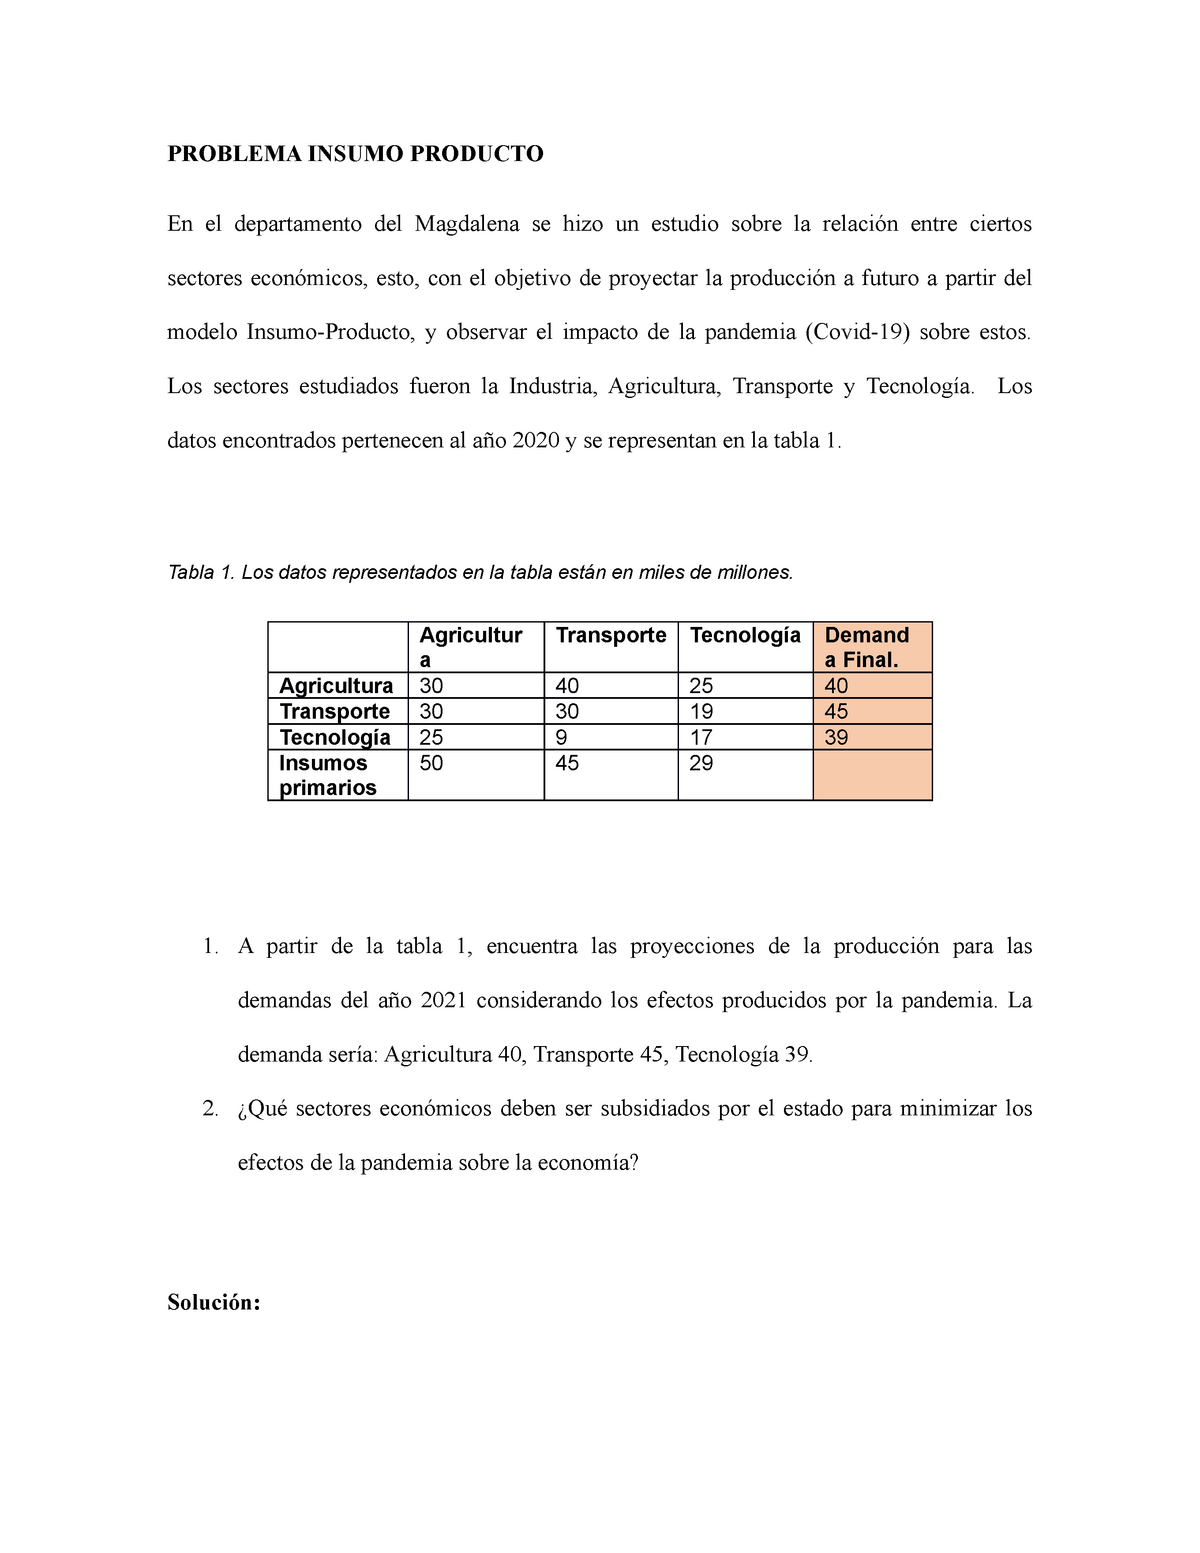 Álgebra lineal - Insumo Producto - PROBLEMA INSUMO PRODUCTO En el  departamento del Magdalena se hizo - Studocu